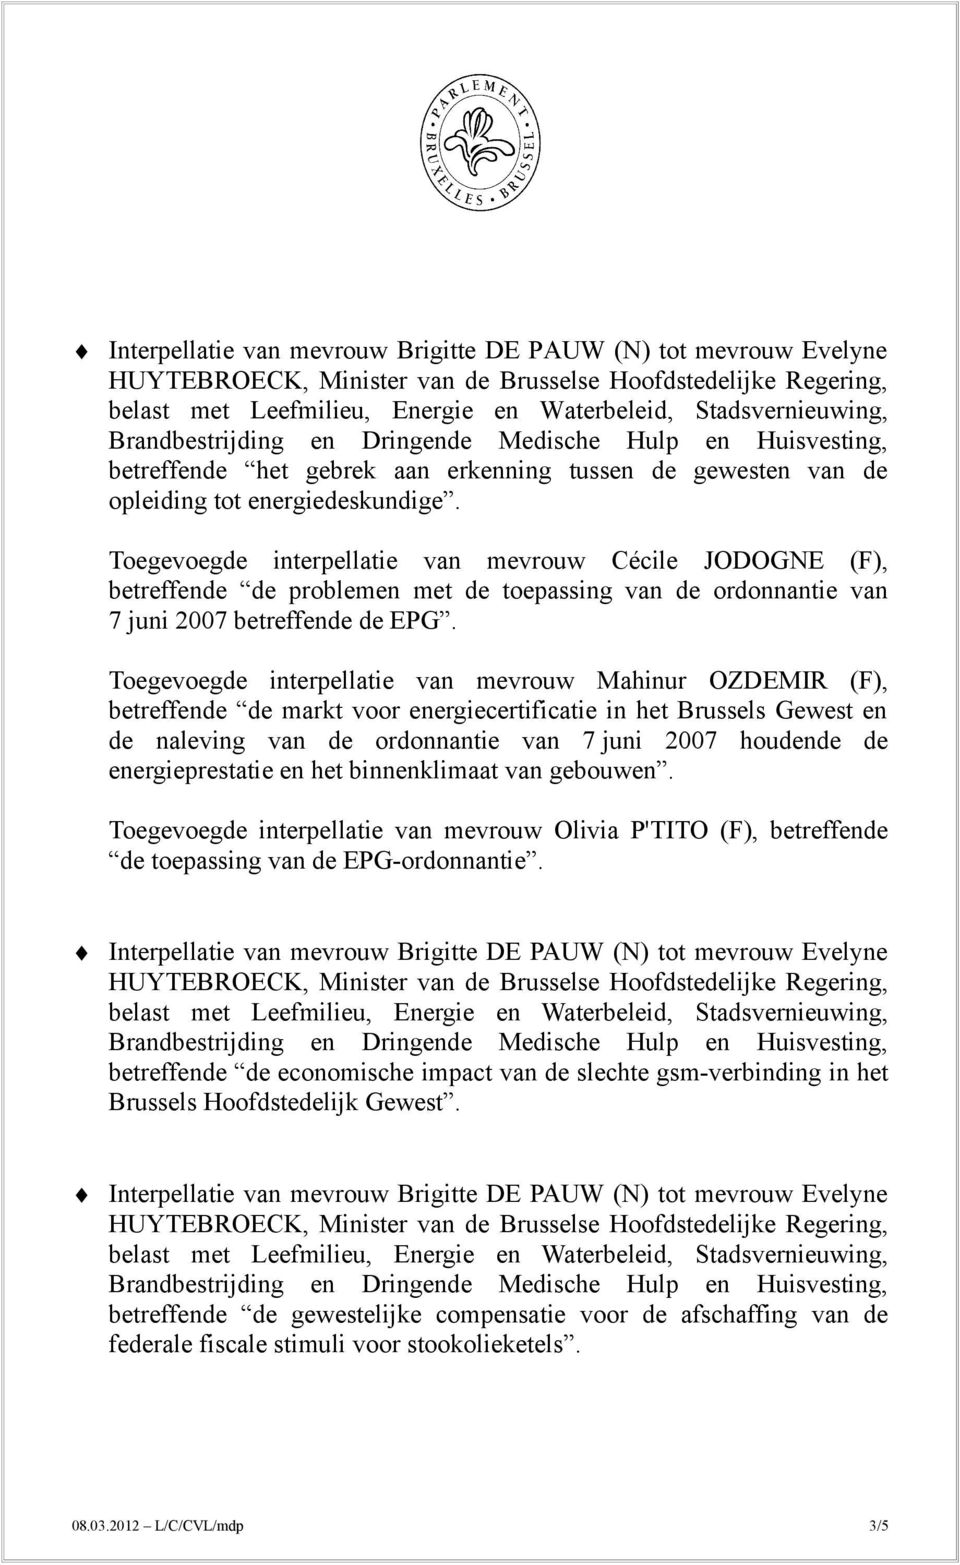 Toegevoegde interpellatie van mevrouw Mahinur OZDEMIR (F), betreffende de markt voor energiecertificatie in het Brussels Gewest en de naleving van de ordonnantie van 7 juni 2007 houdende de